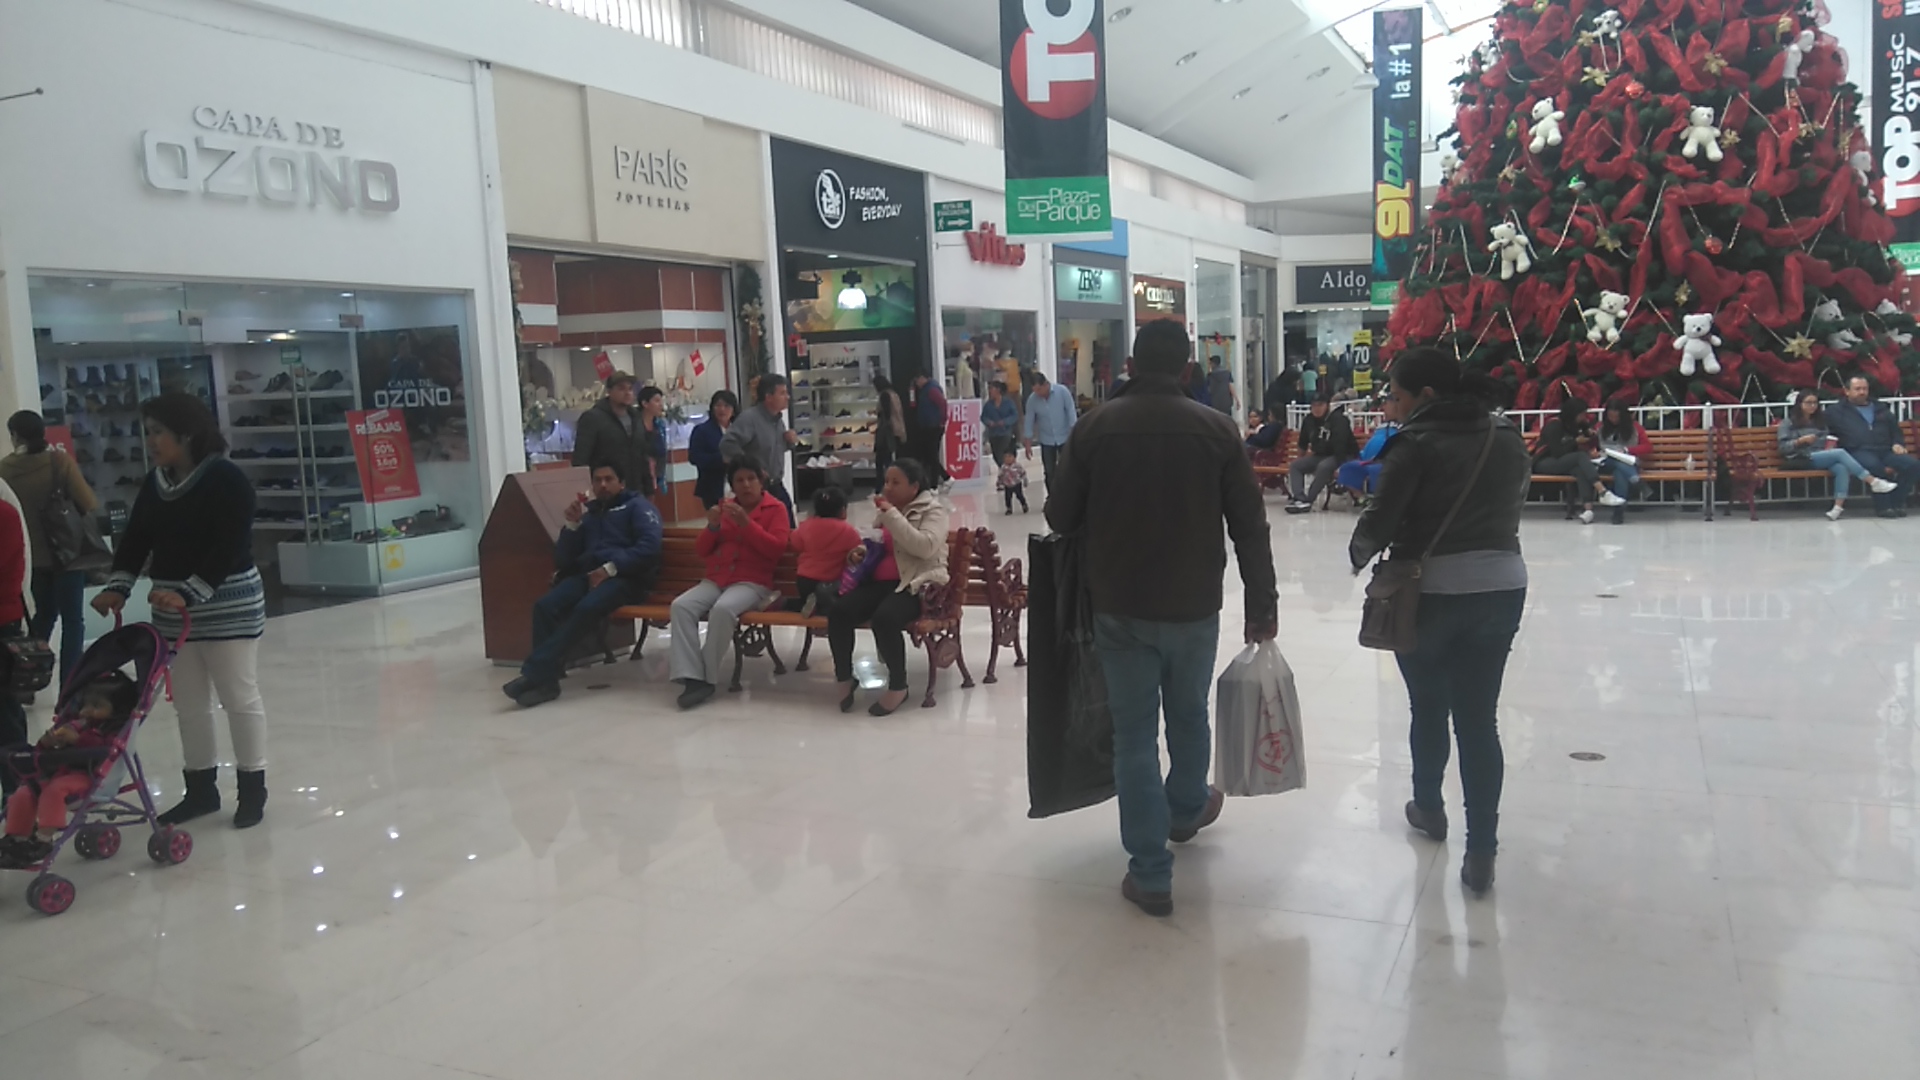  Tras psicosis de la semana pasada, los centros comerciales volvieron a la normalidad